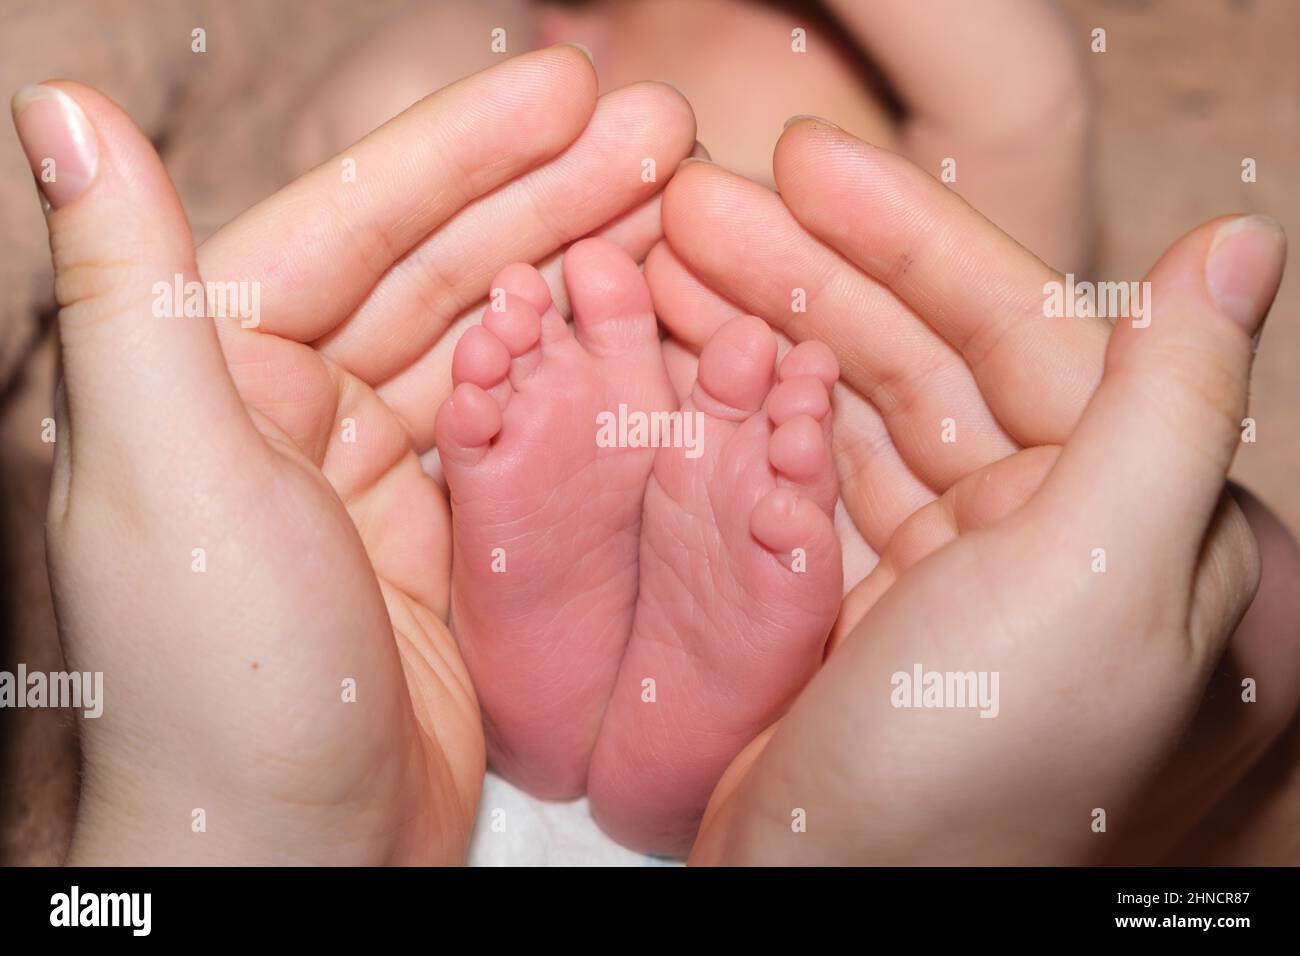 Las piernas de un bebé de dos semanas de edad están en manos de una madre. Las palmas de una mujer y los pies de un niño, el amor y el cuidado de los padres. Foto de stock